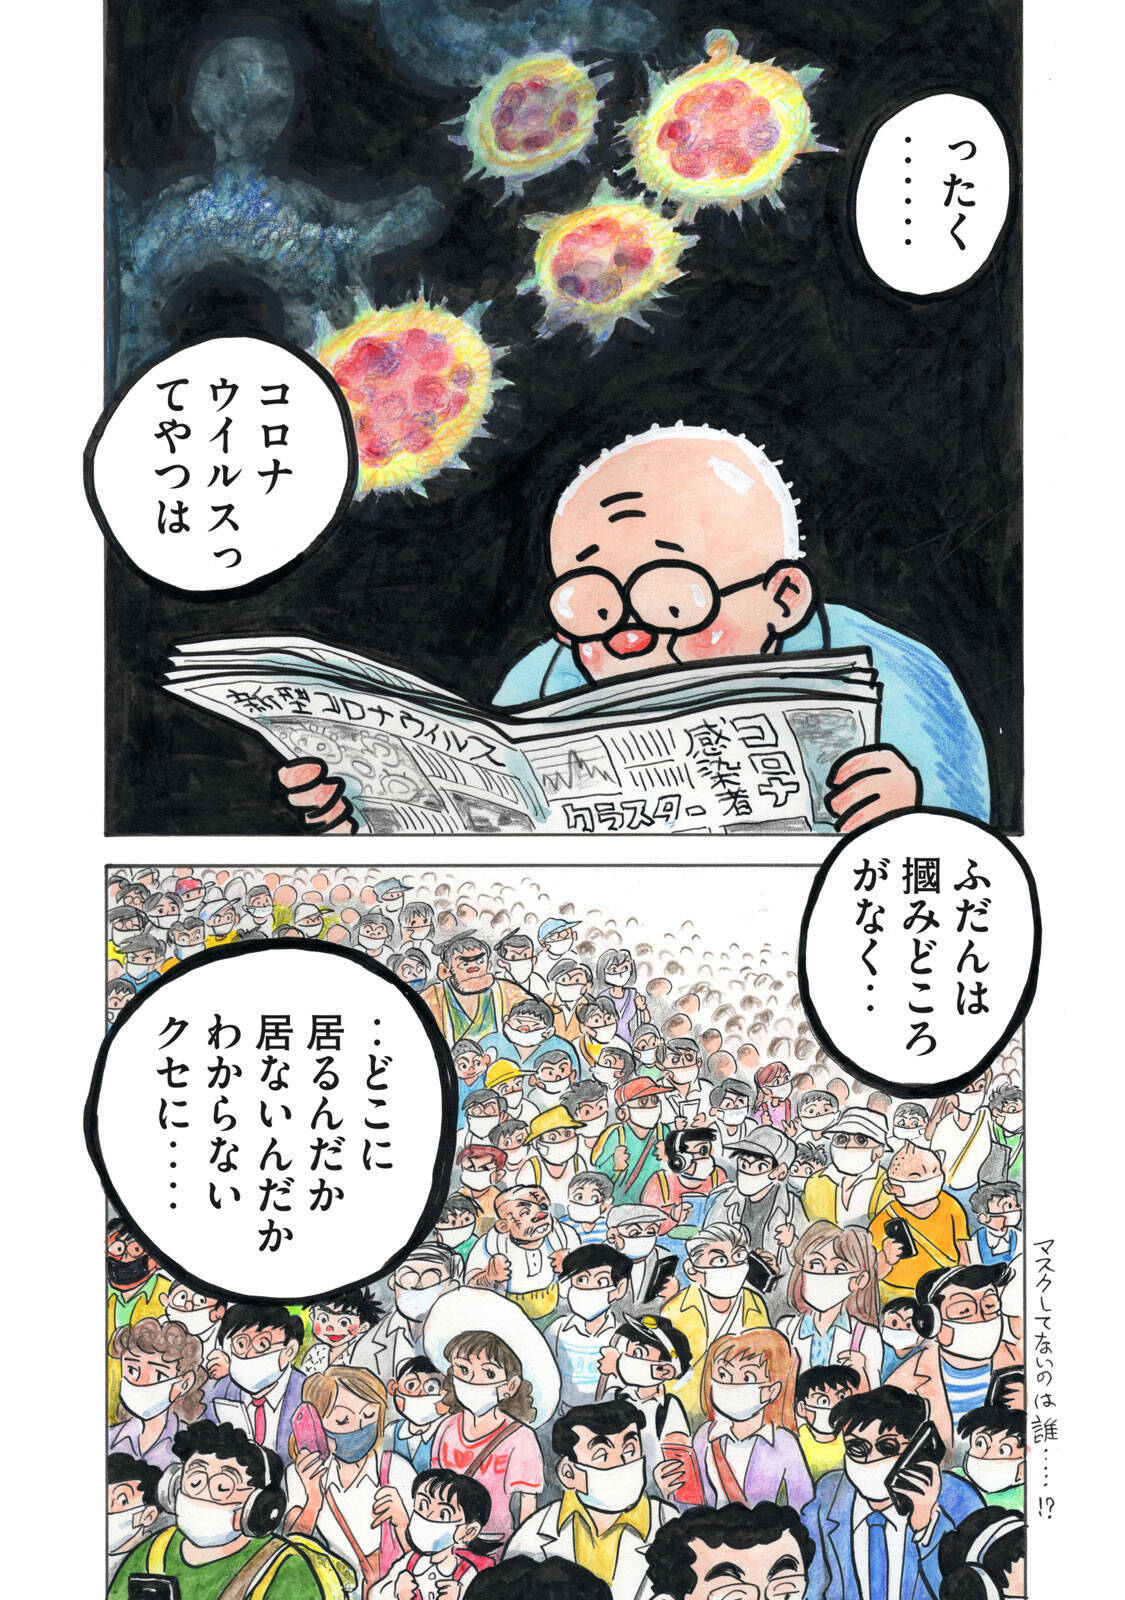 ちばてつや氏ら50人超の漫画家がコロナ禍の "日常" を描く！